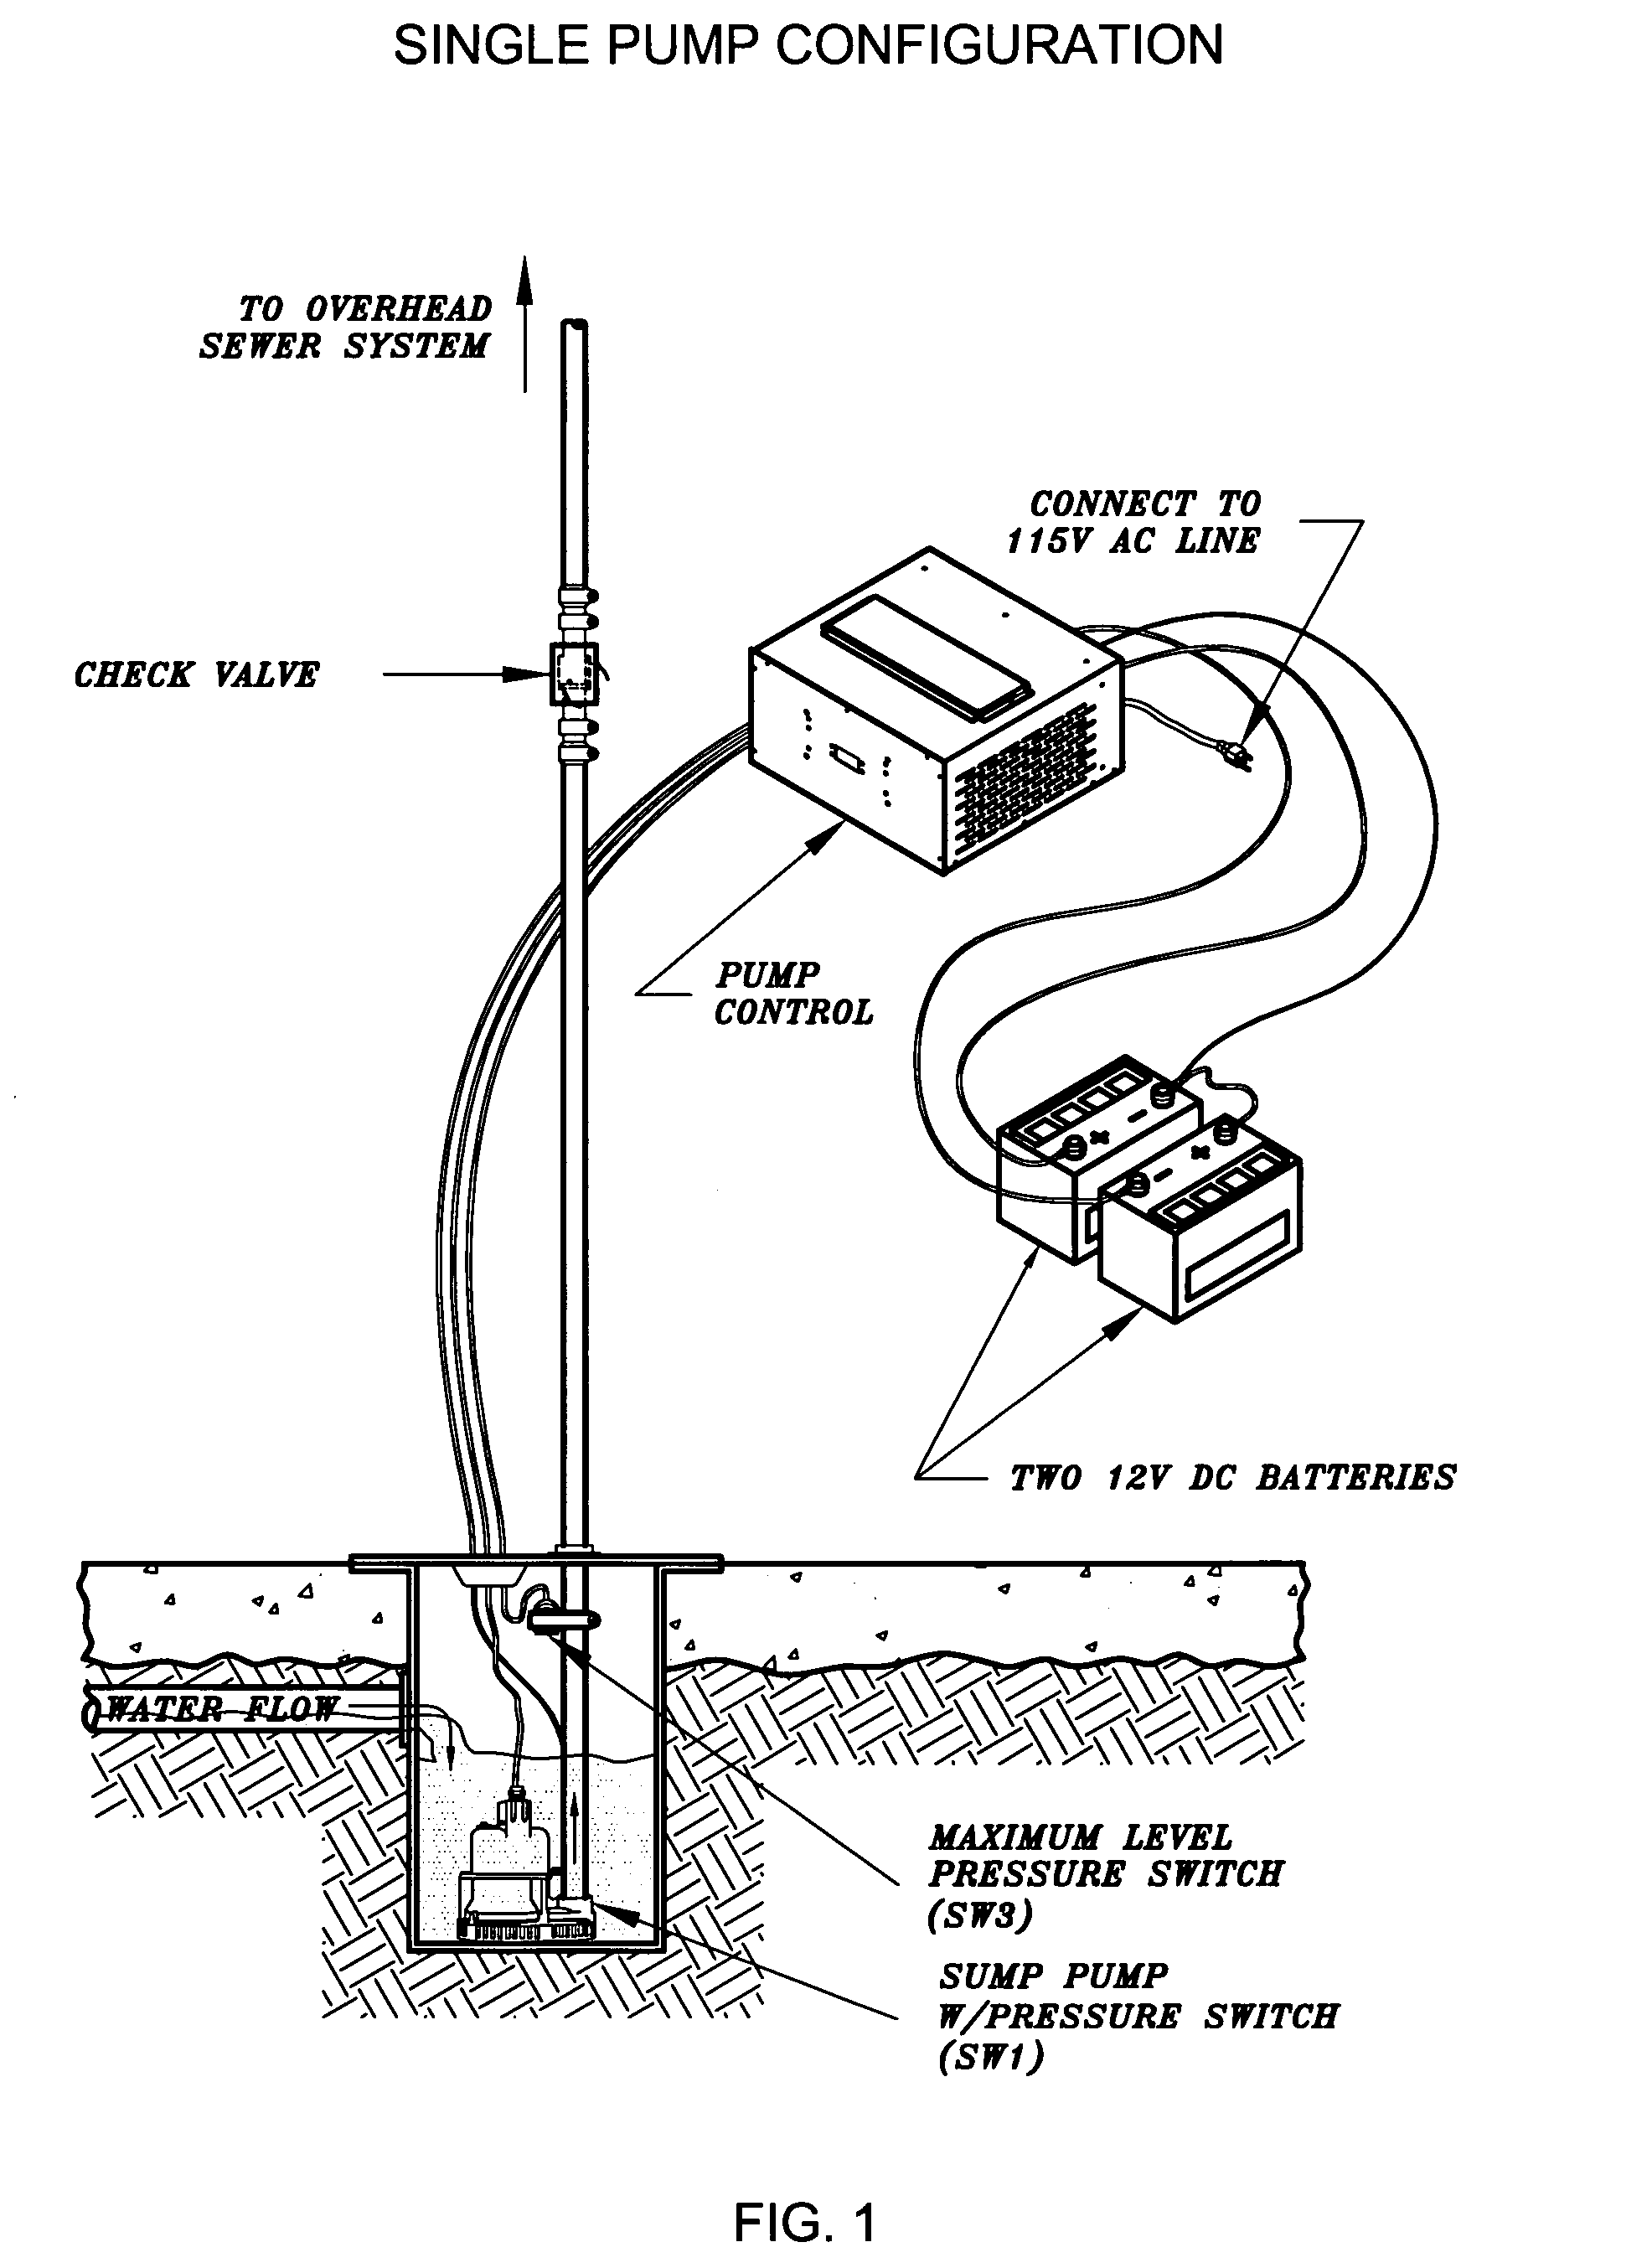 Sump pump control system